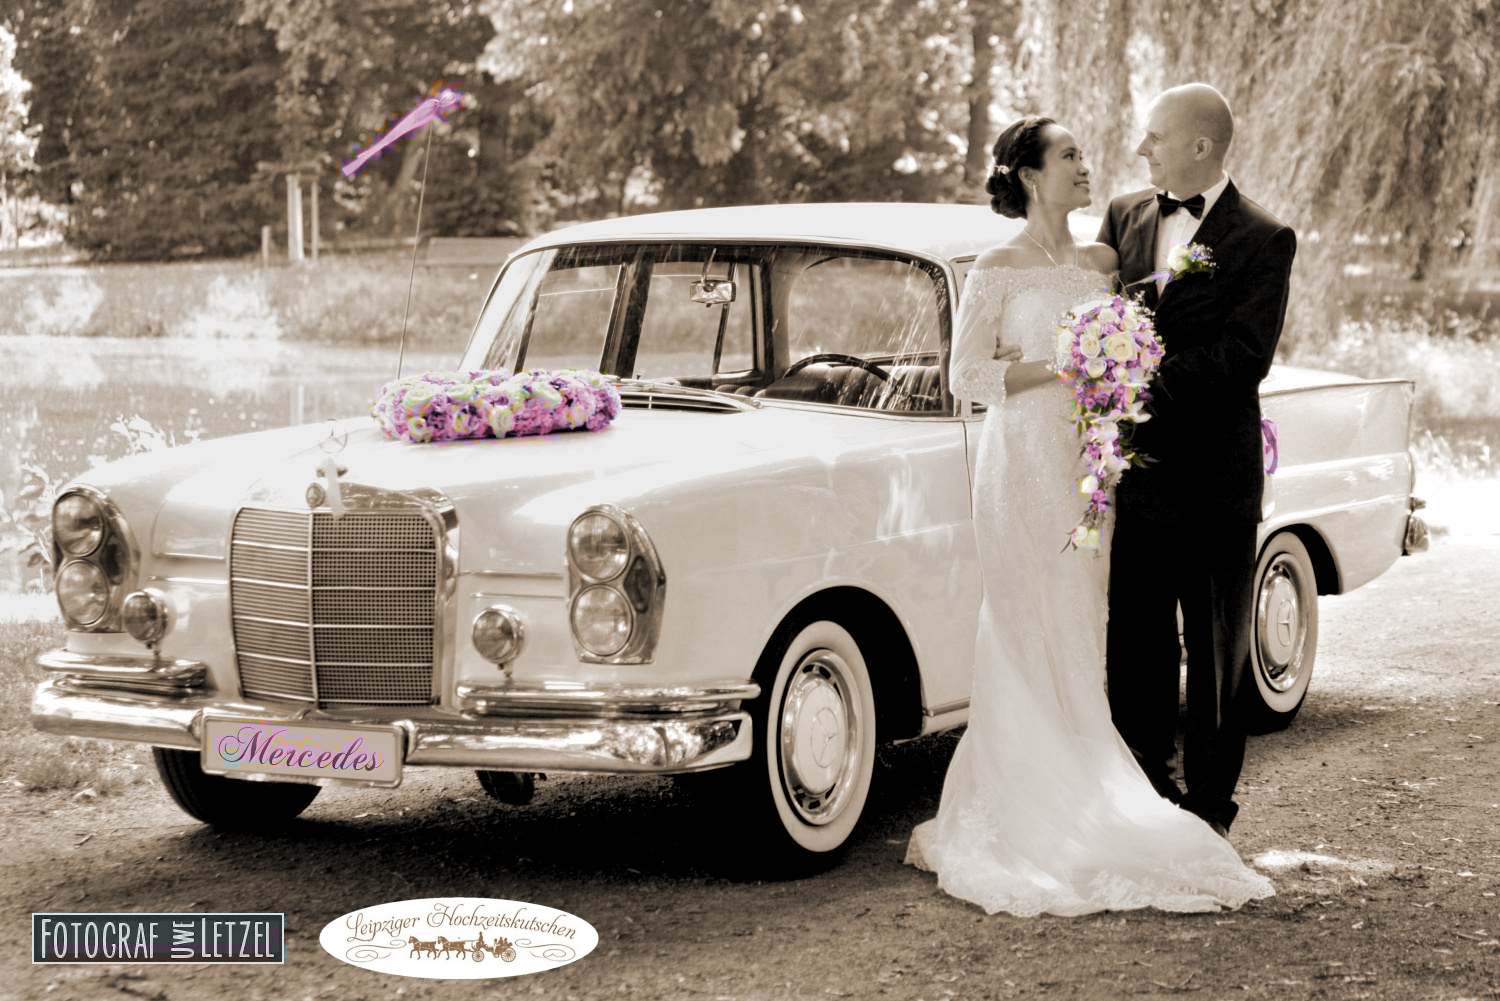 Foto: Mercedes Benz Oldtimer Hochzeitslimousine in Leipzig mieten